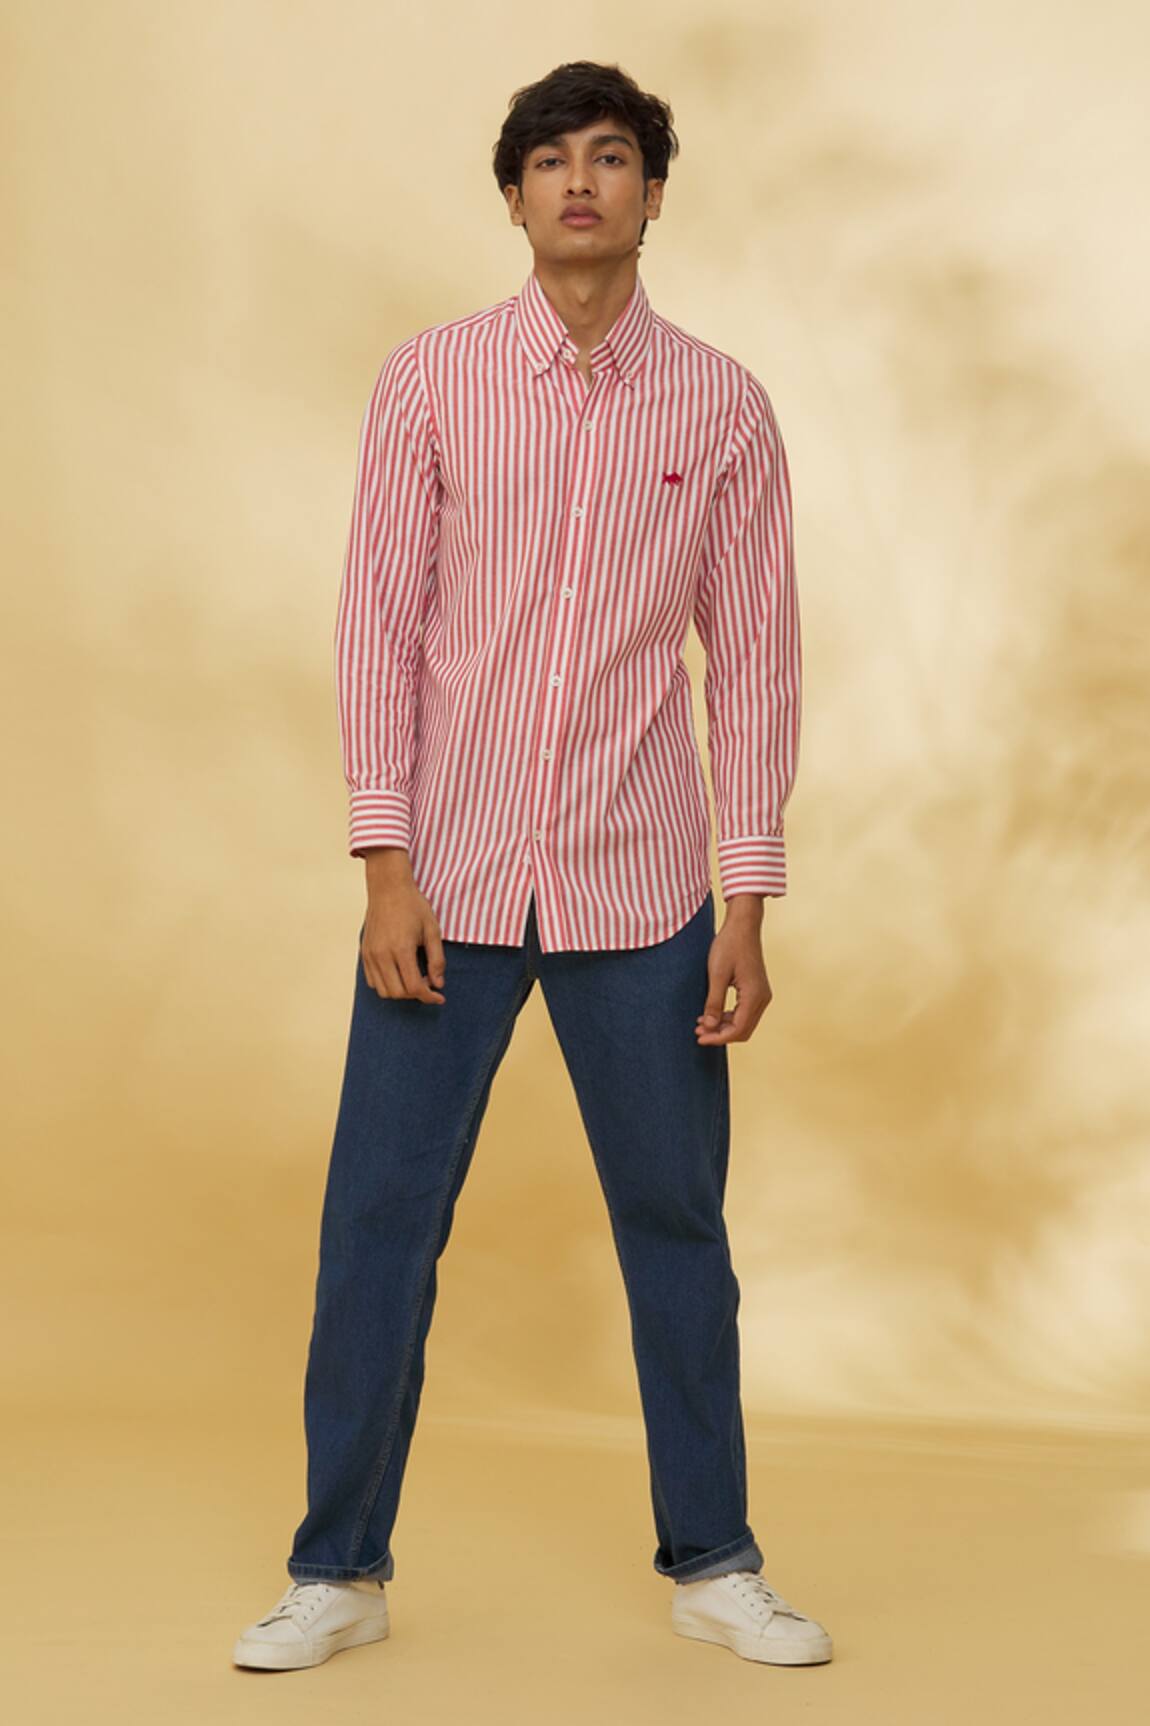 The Men's Kompany Striped Print Cotton Shirt